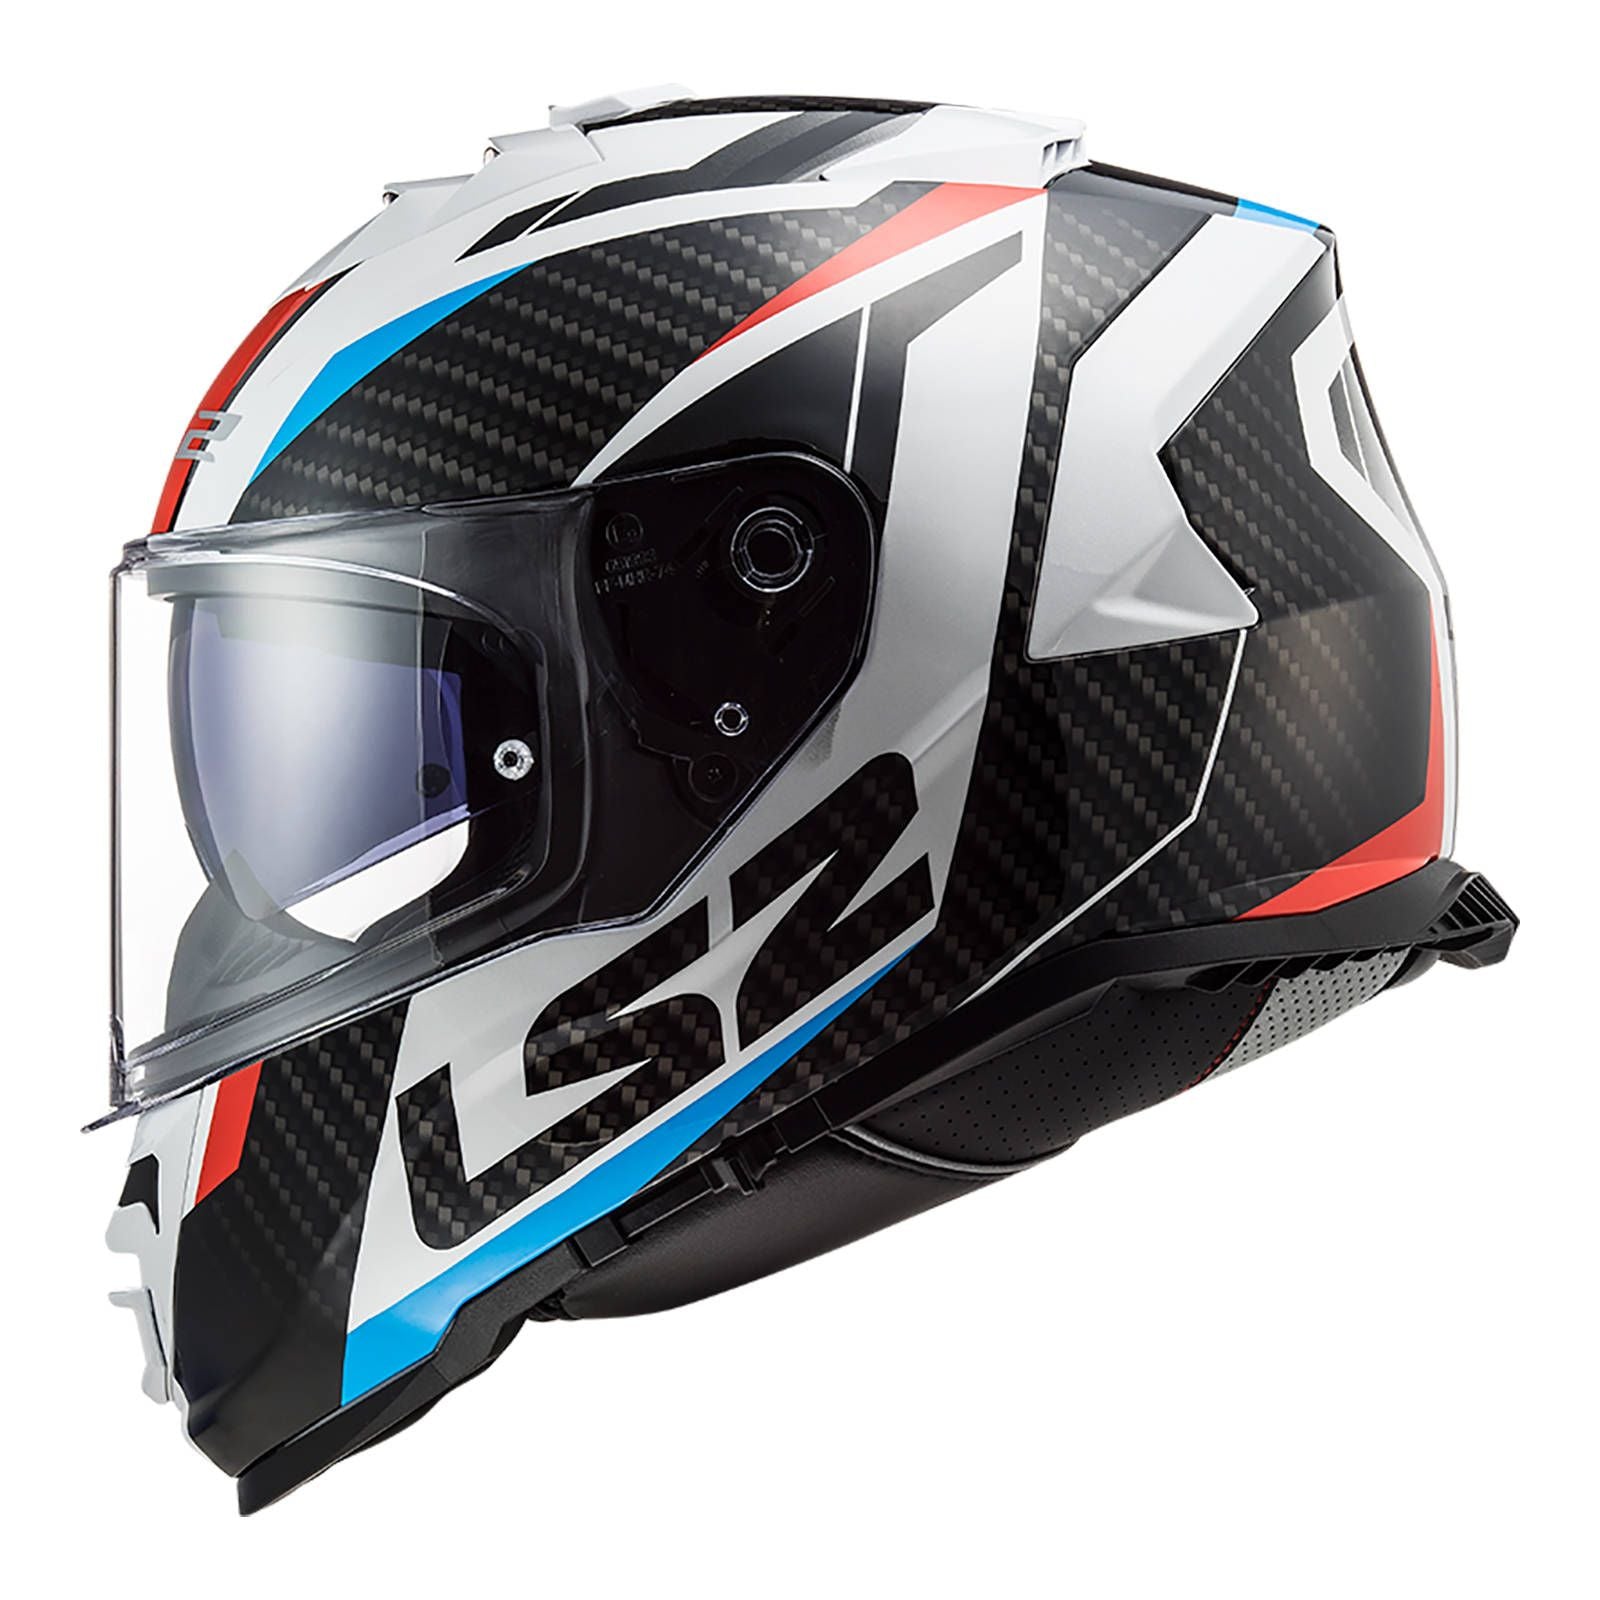 New LS2 FF800 Storm Racer Helmet - White / Blue / Red (S) #LS2FF800RACWBRS